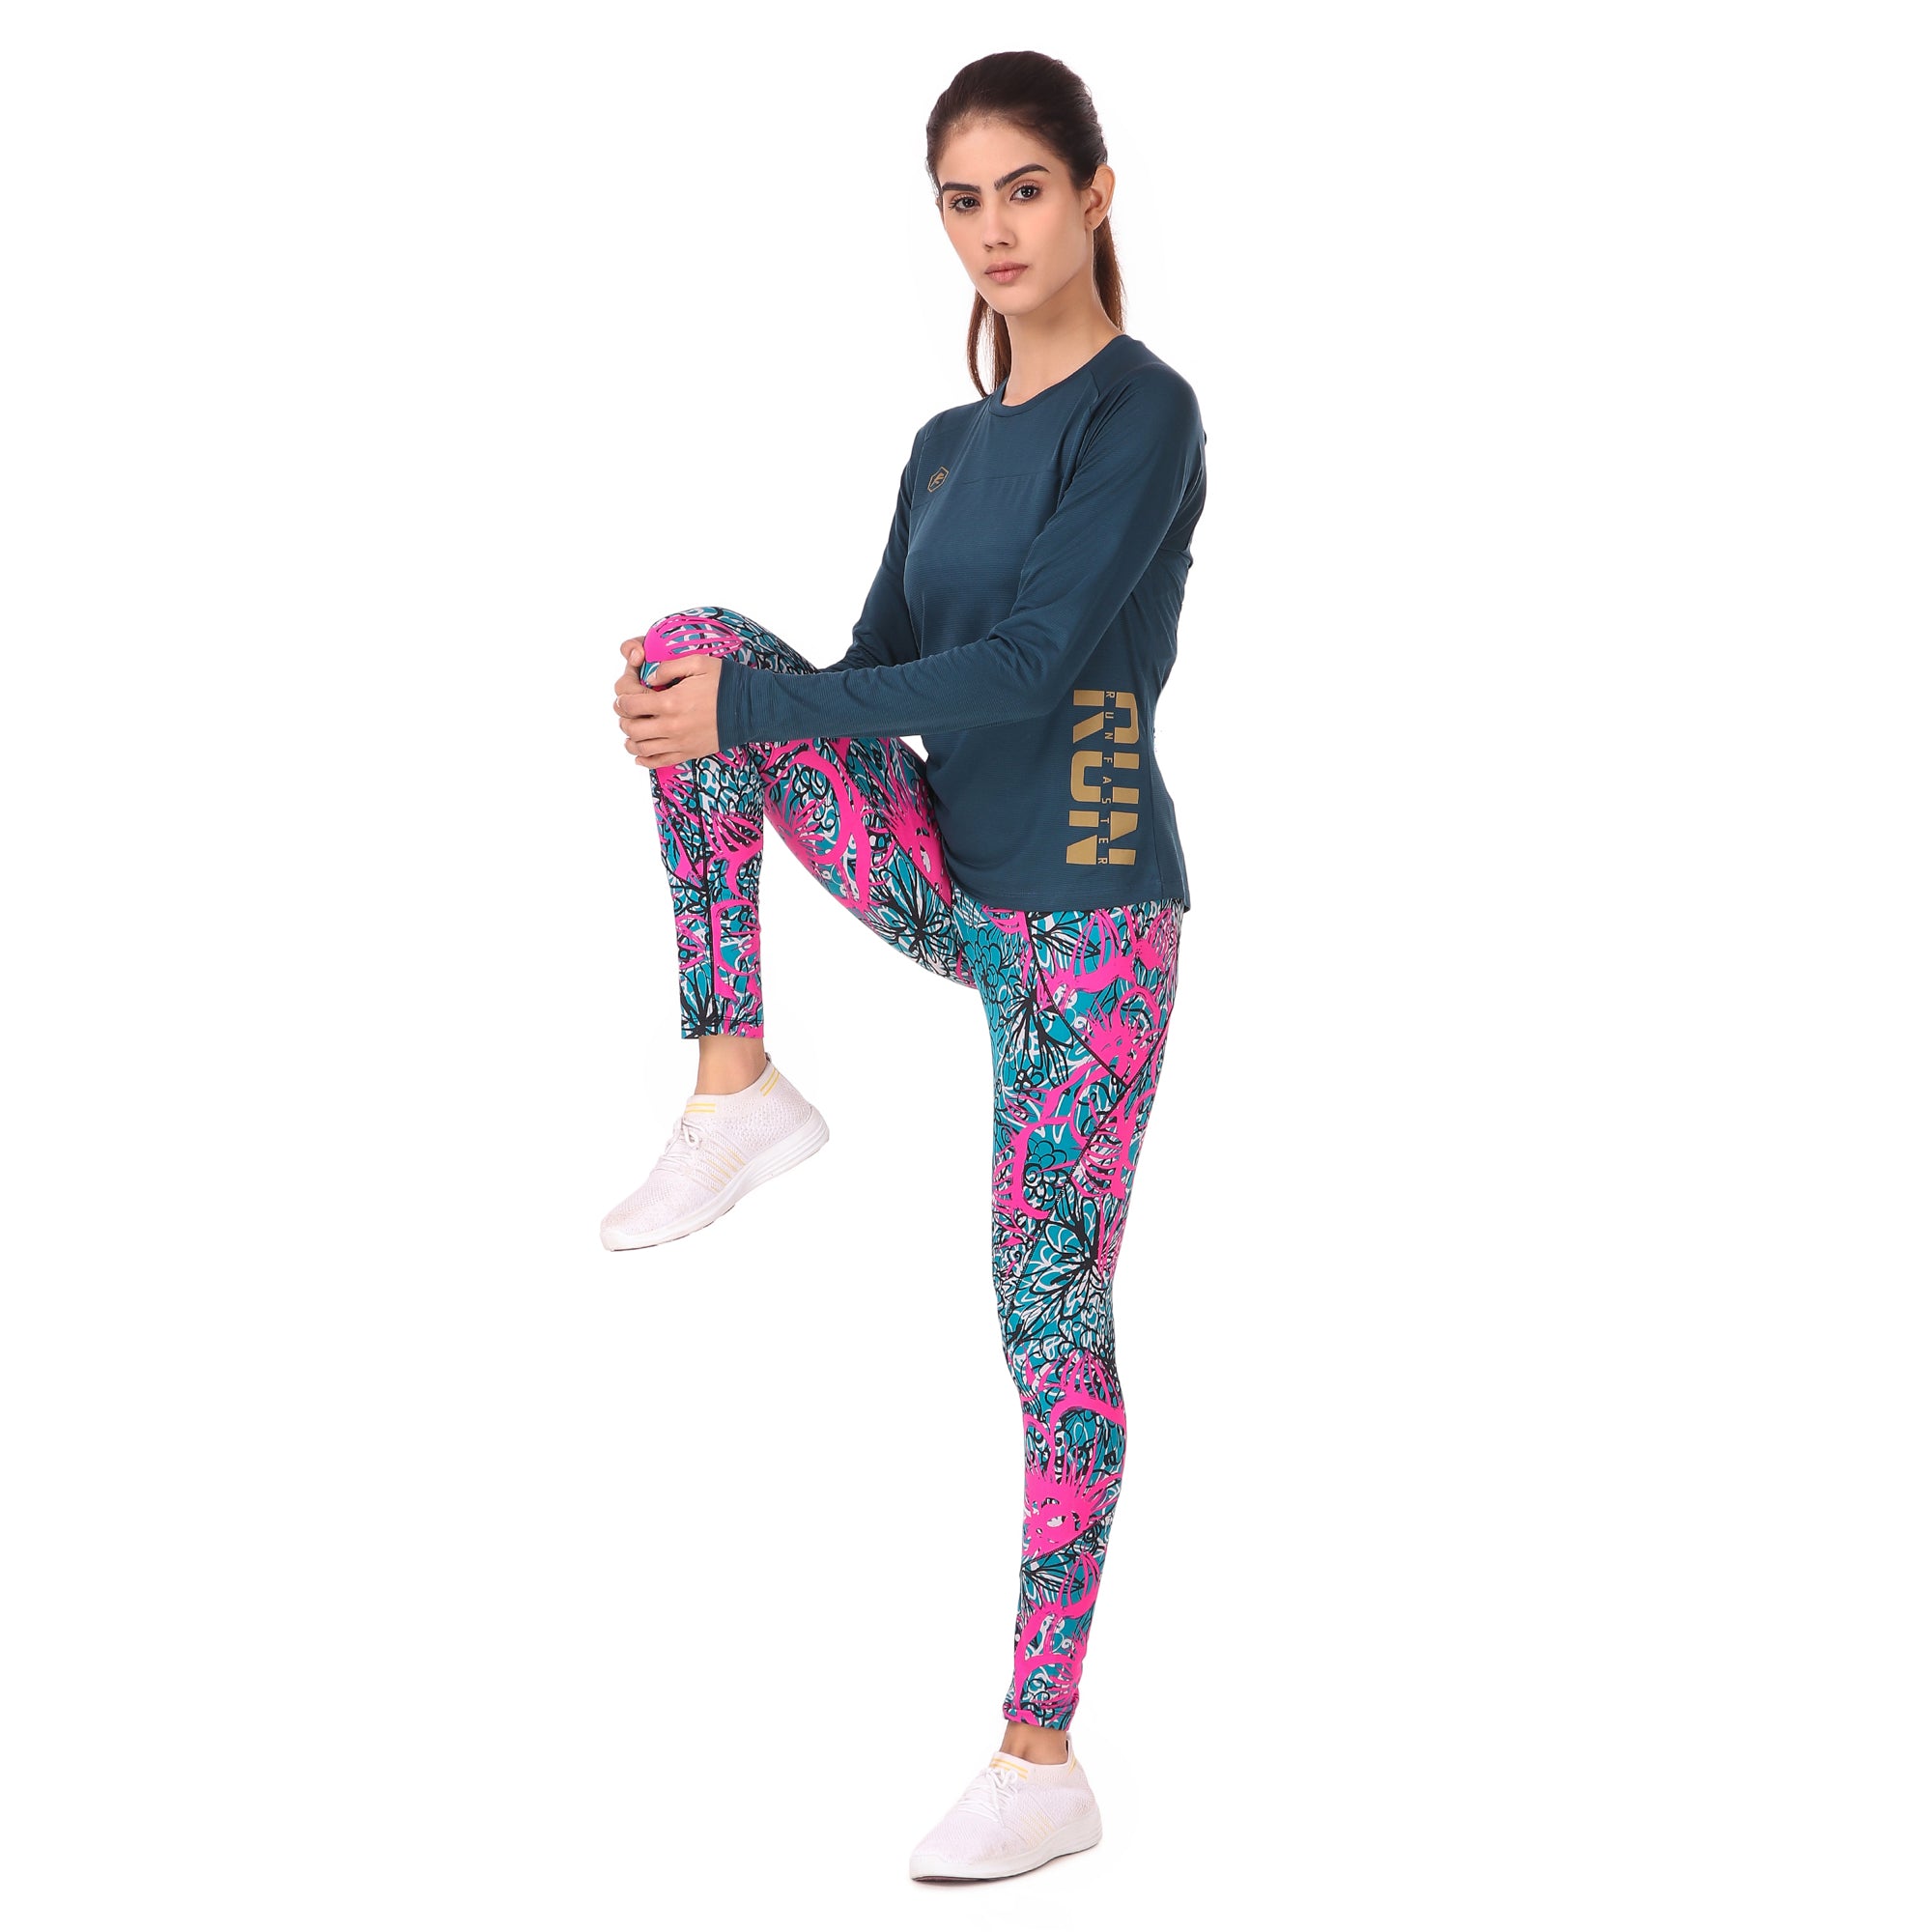 Gym Yoga Running Legging For Women Zip Pocket (Teal/pink